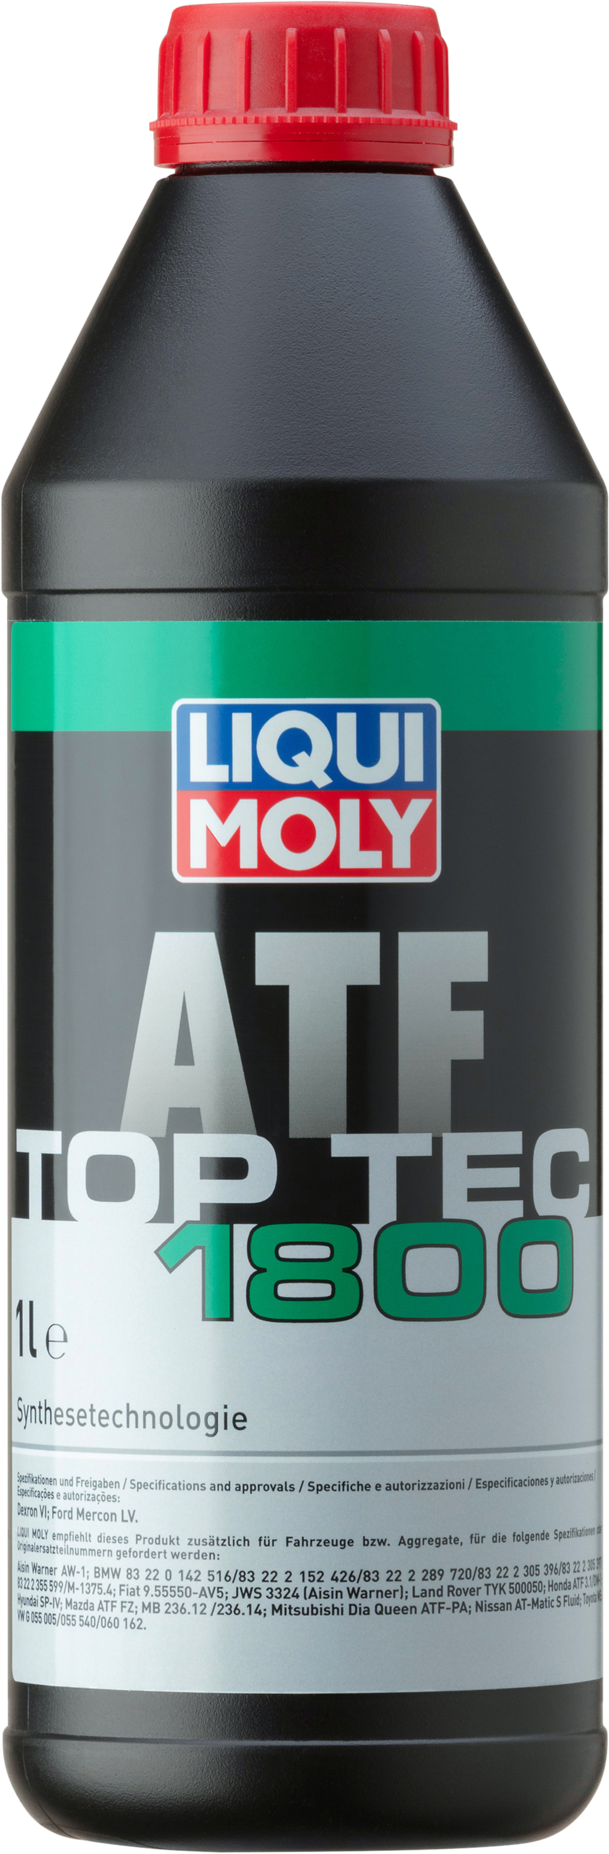 Liqui Moly Top Tec ATF 1800, 6 x 1 lt detail 2